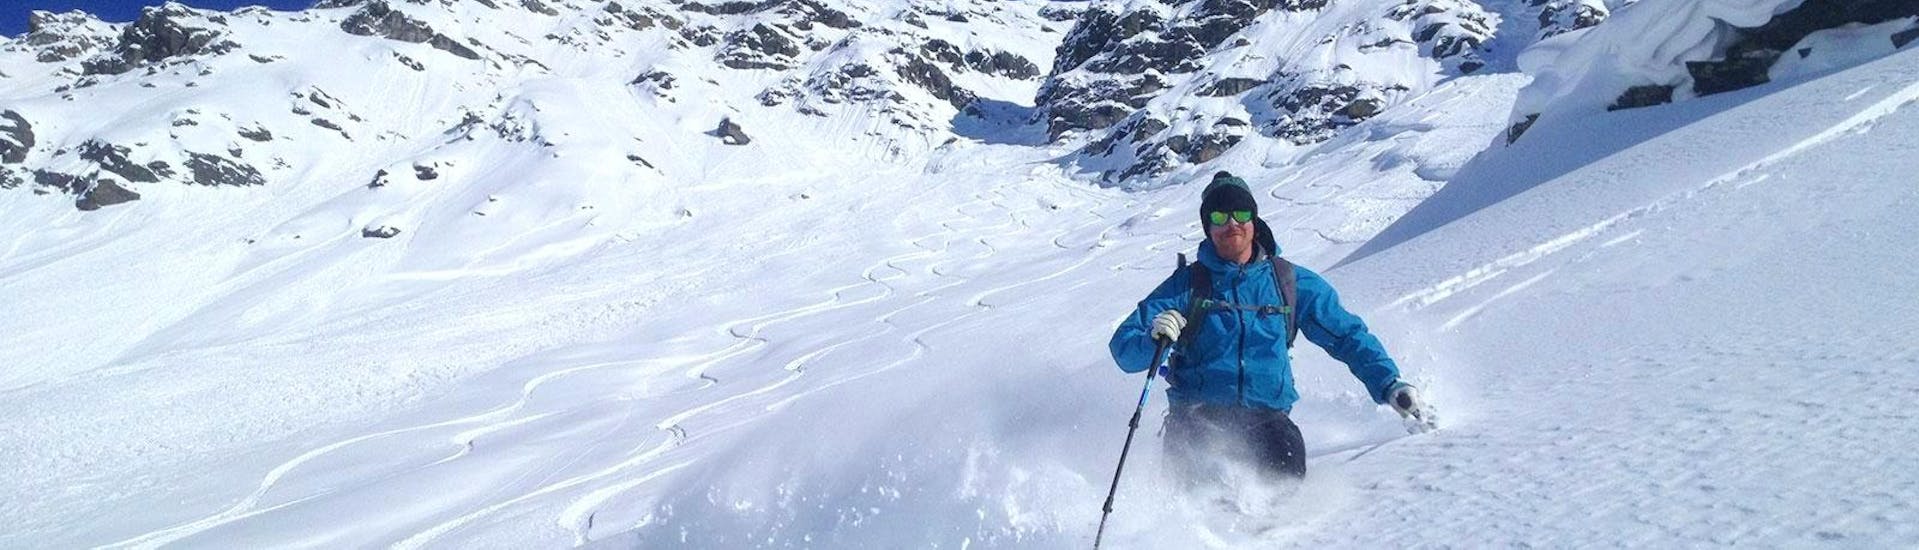 Un freerider disfruta de la nieve fresca en polvo durante sus clases particulares de esquí fuera de pista para adultos - Avanzado, con la escuela de esquí Snocool Tignes.